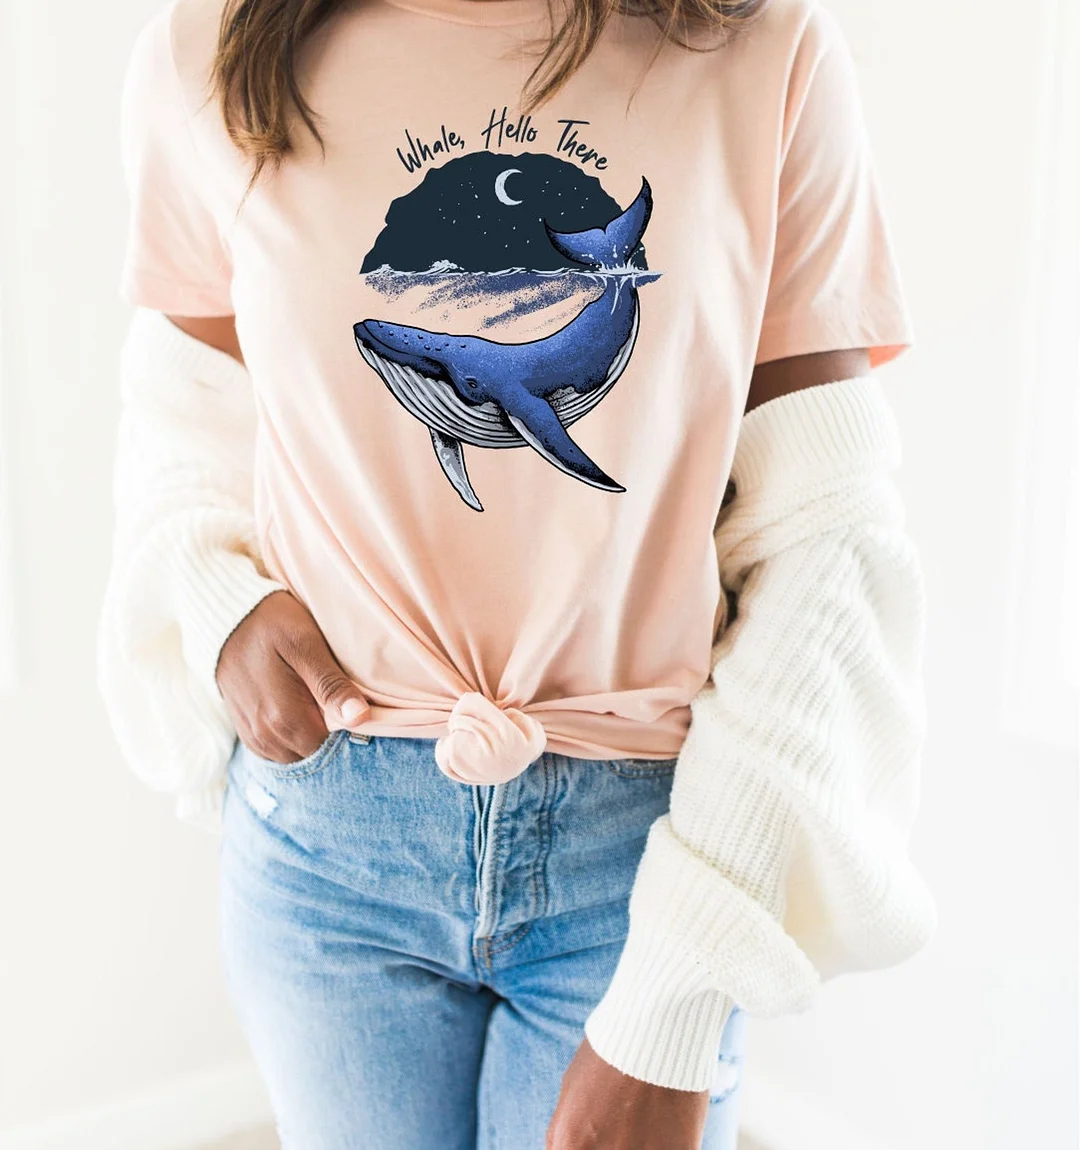 Whale Hello There Shirt Pun Animal Lover Cute Tshirt Ocean Marine Animal Print Top Tees